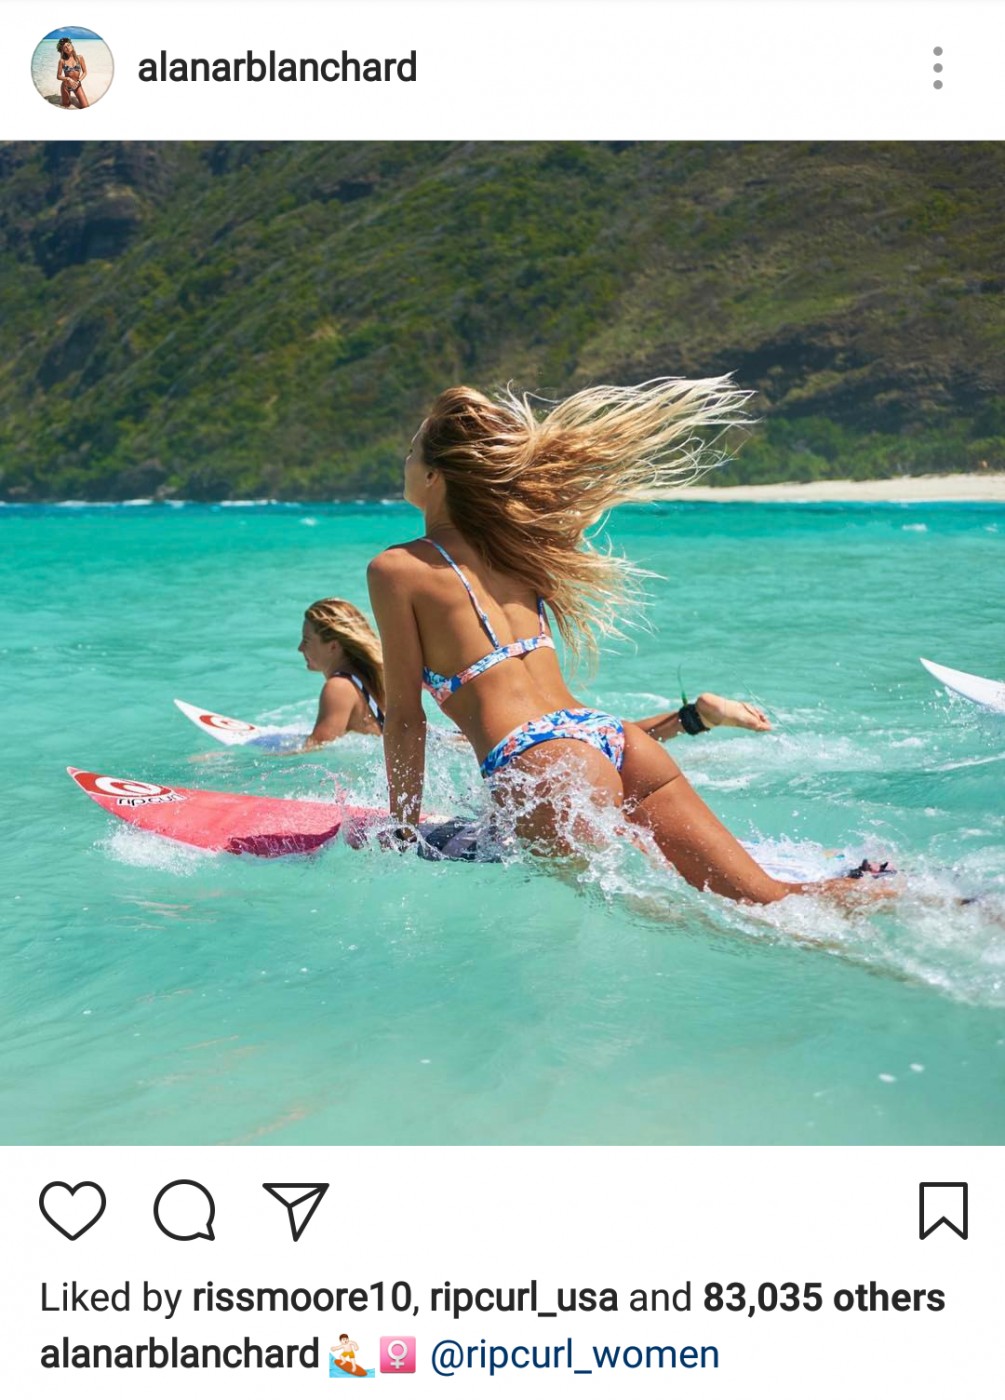 surf trip instagram